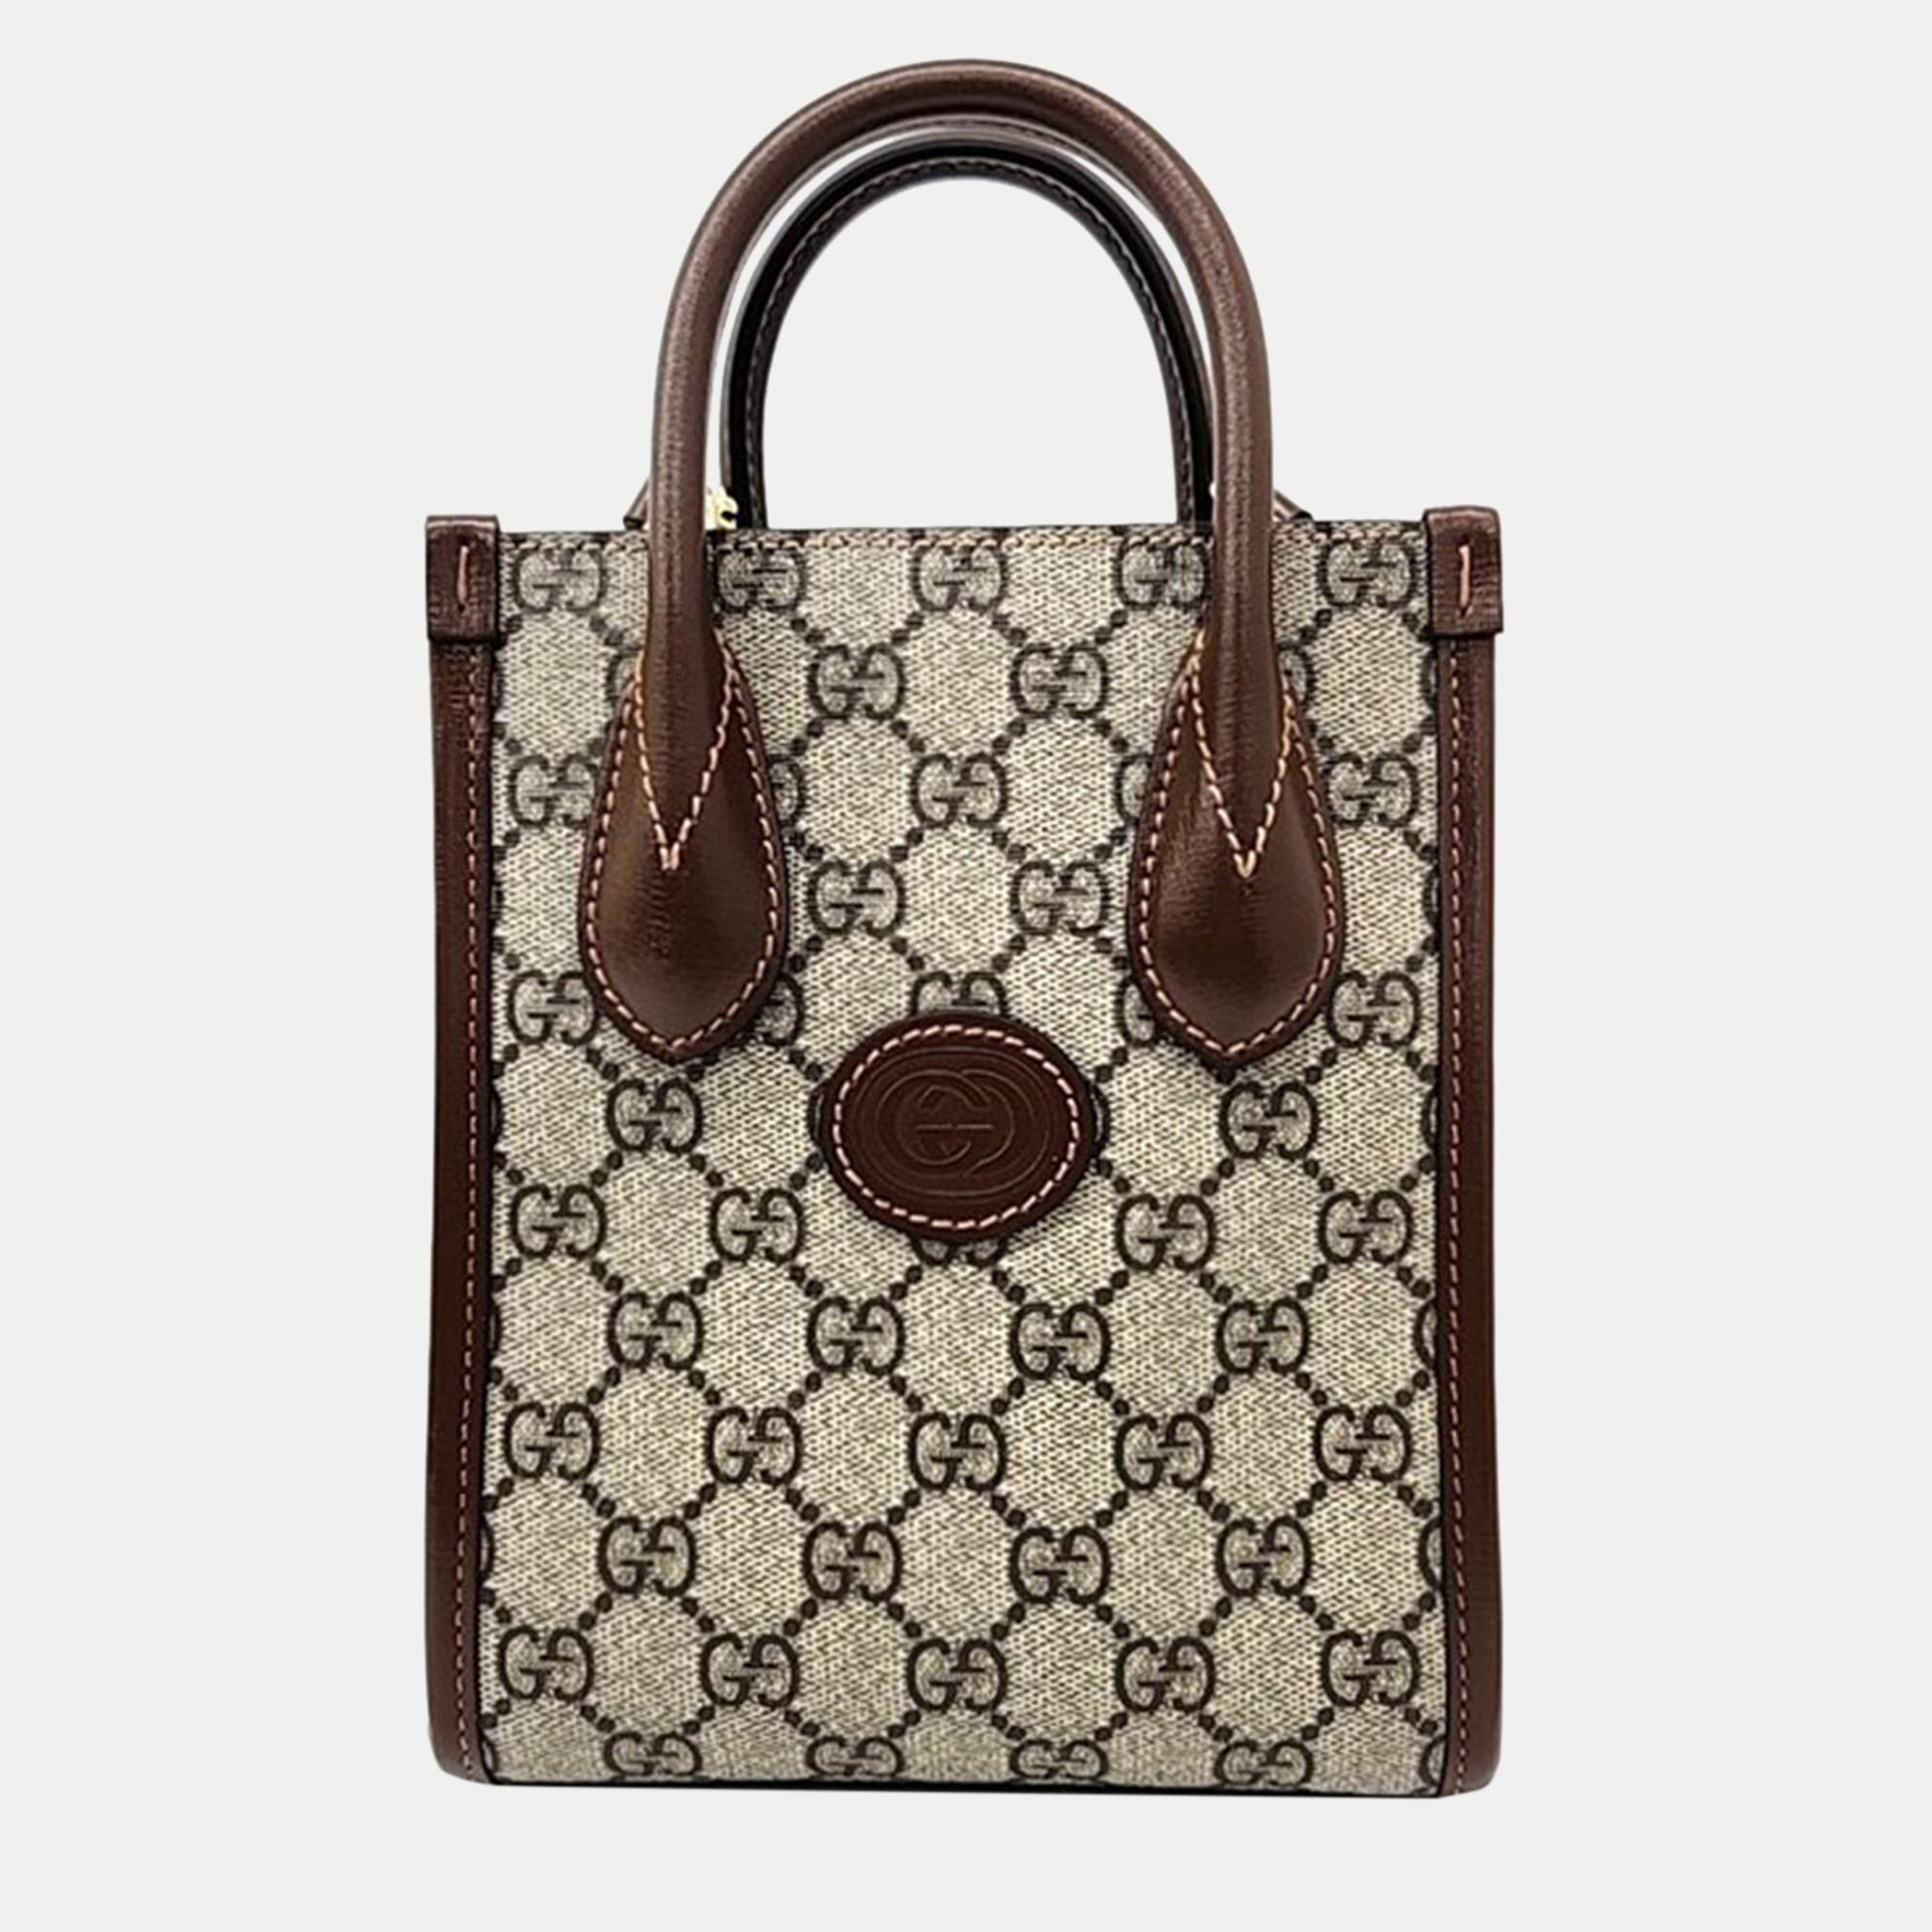 Gucci brown/beige gg canvas mini tote bag